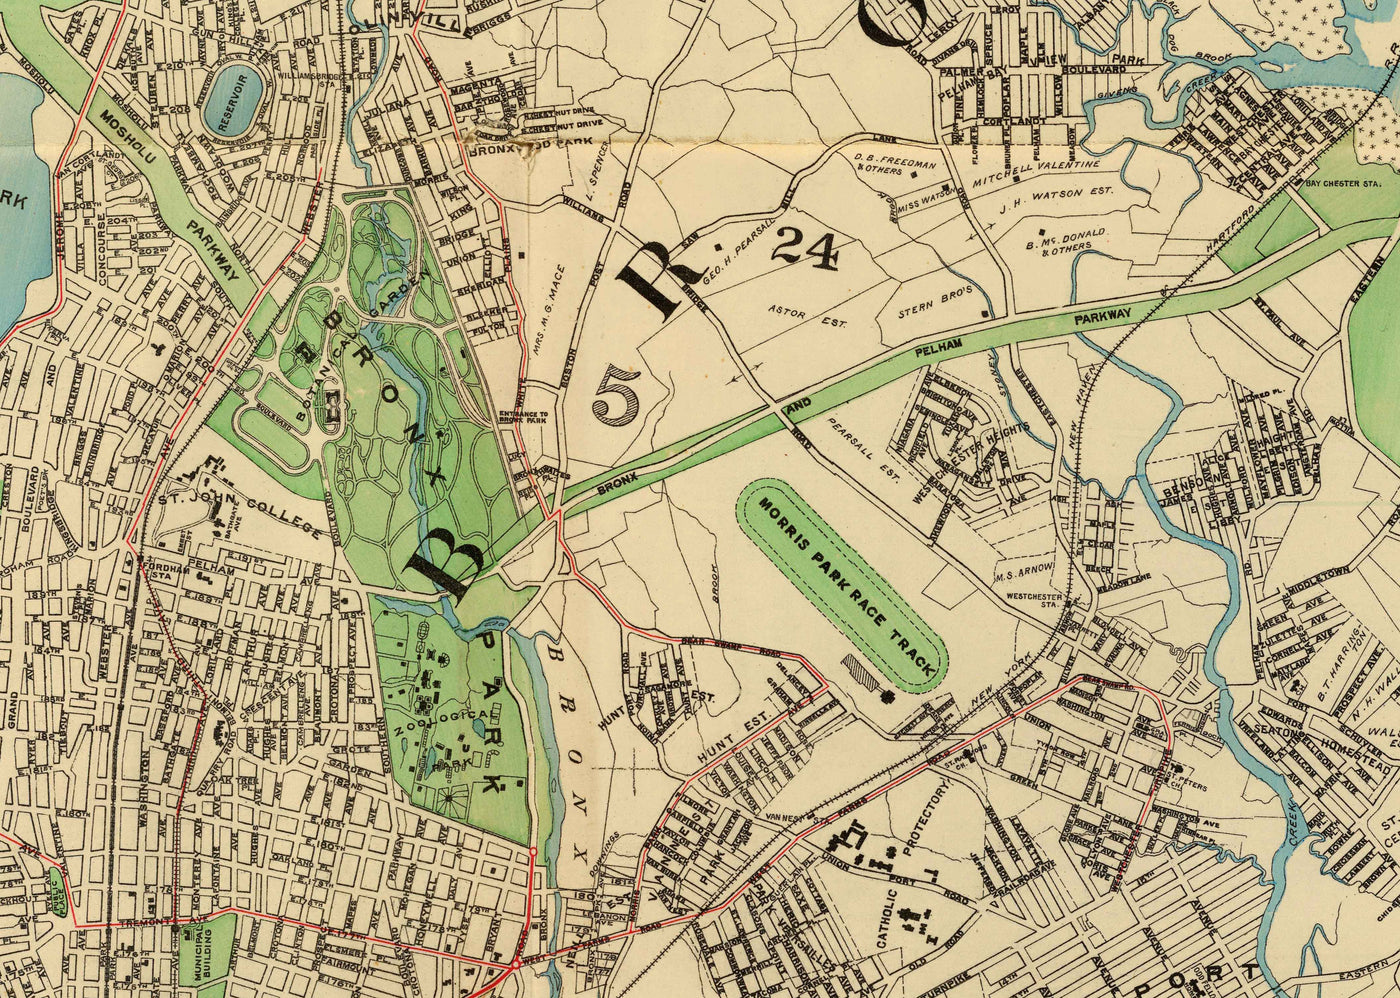 Alte Karte der Bronx im Jahr 1900 von Hyde and Co. - New York City, Pelham Bay Park, Hunter Island, Botanischer Garten, Harlem River